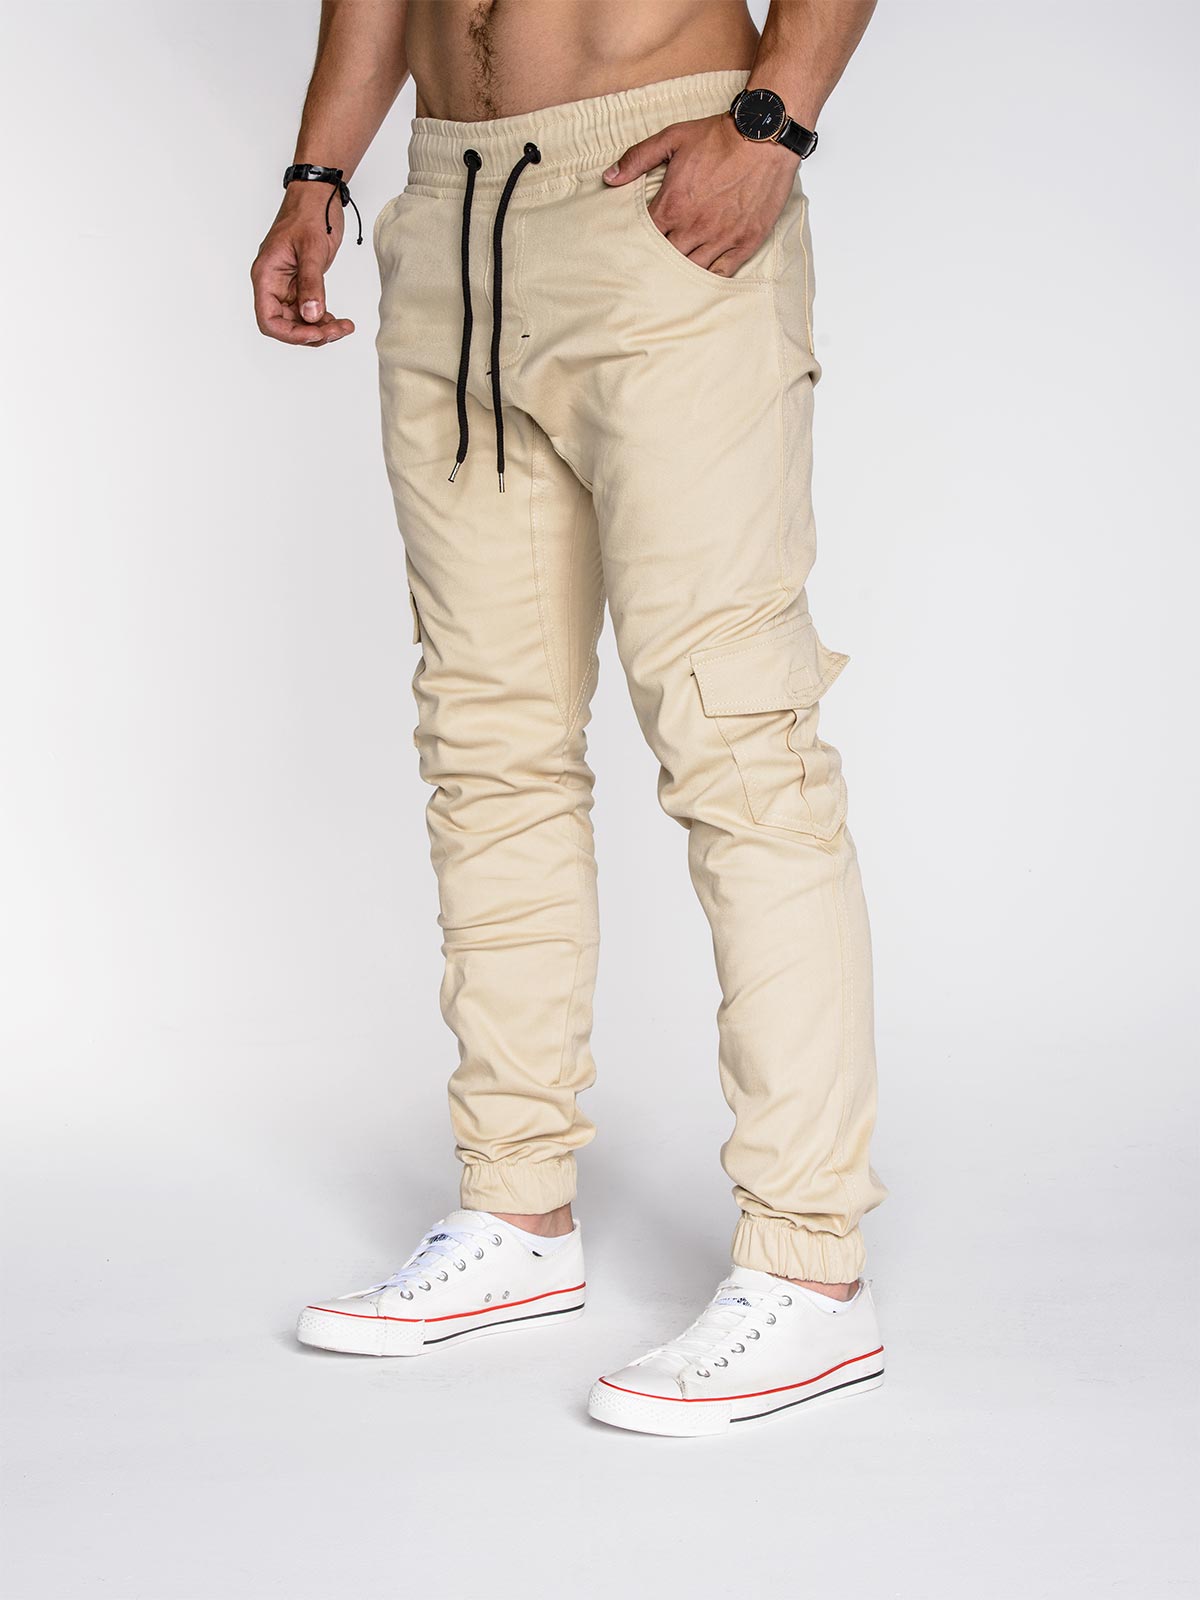 Men's pants joggers P333 - beige | MODONE wholesale - Clothing For Men